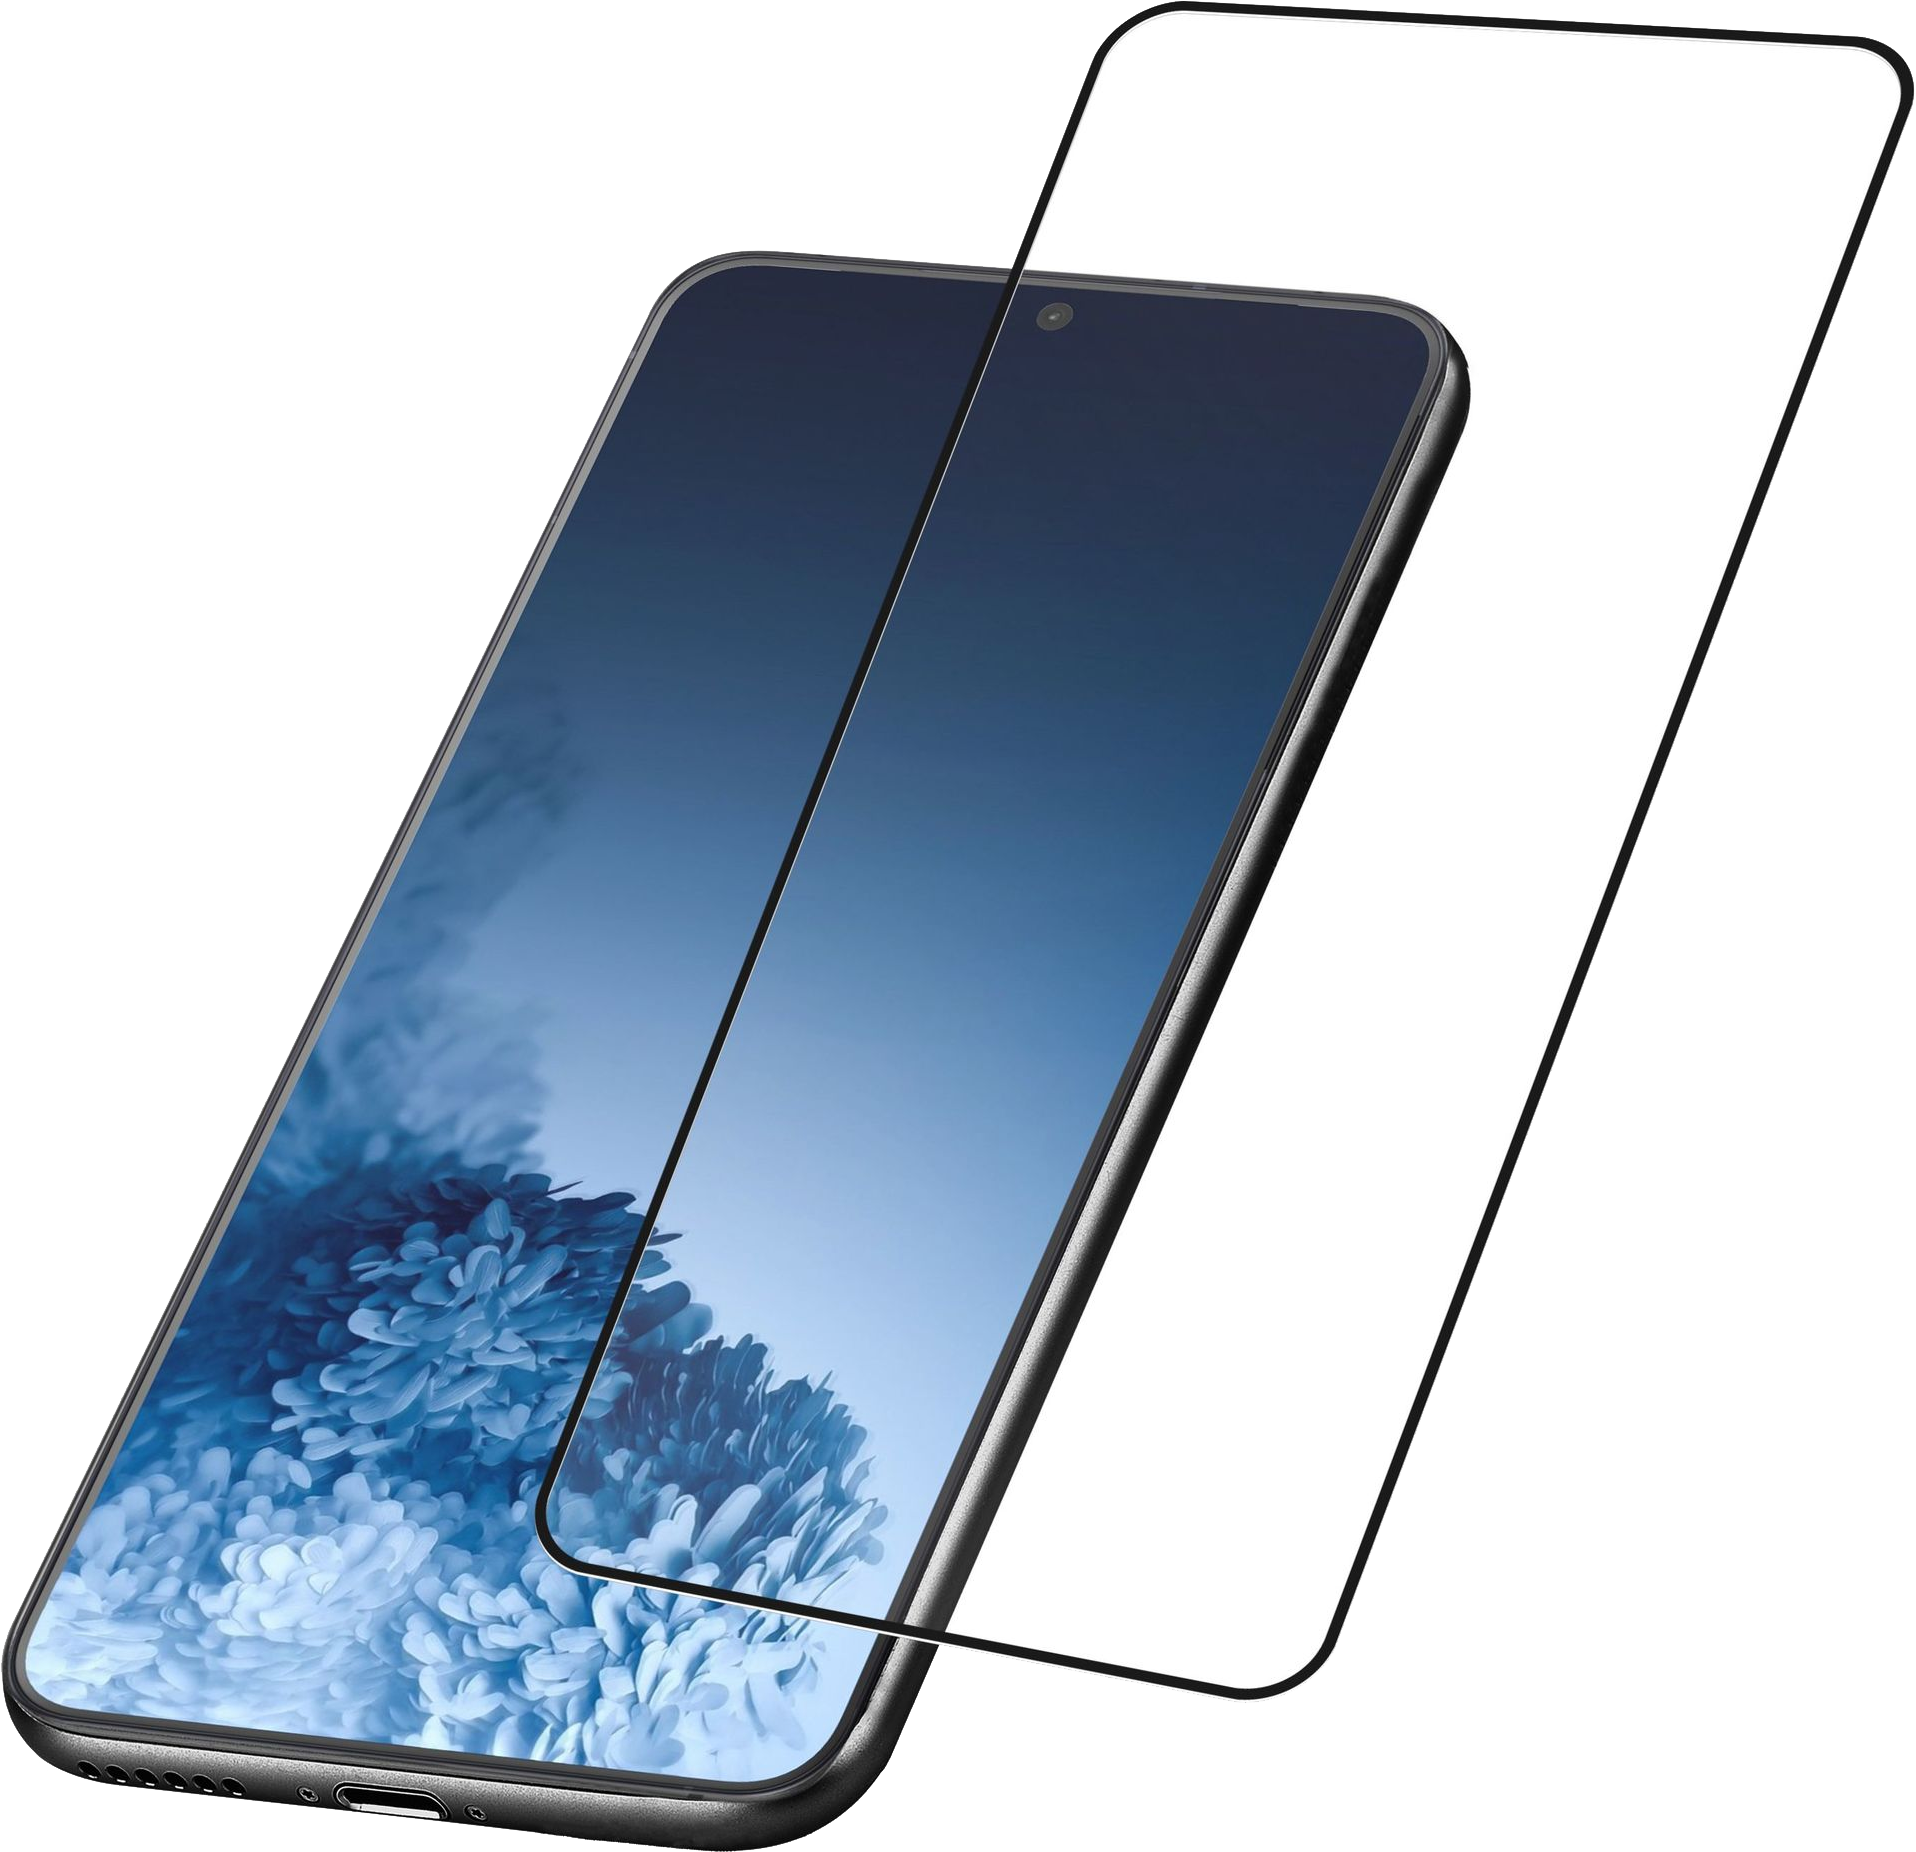 Стекло galaxy s21. Защитное стекло Samsung Galaxy а21s. Защитное стекло на самсунг s21 Ultra. Samsung Galaxy a21s стекло. Защитное стекло s21 Ultra.